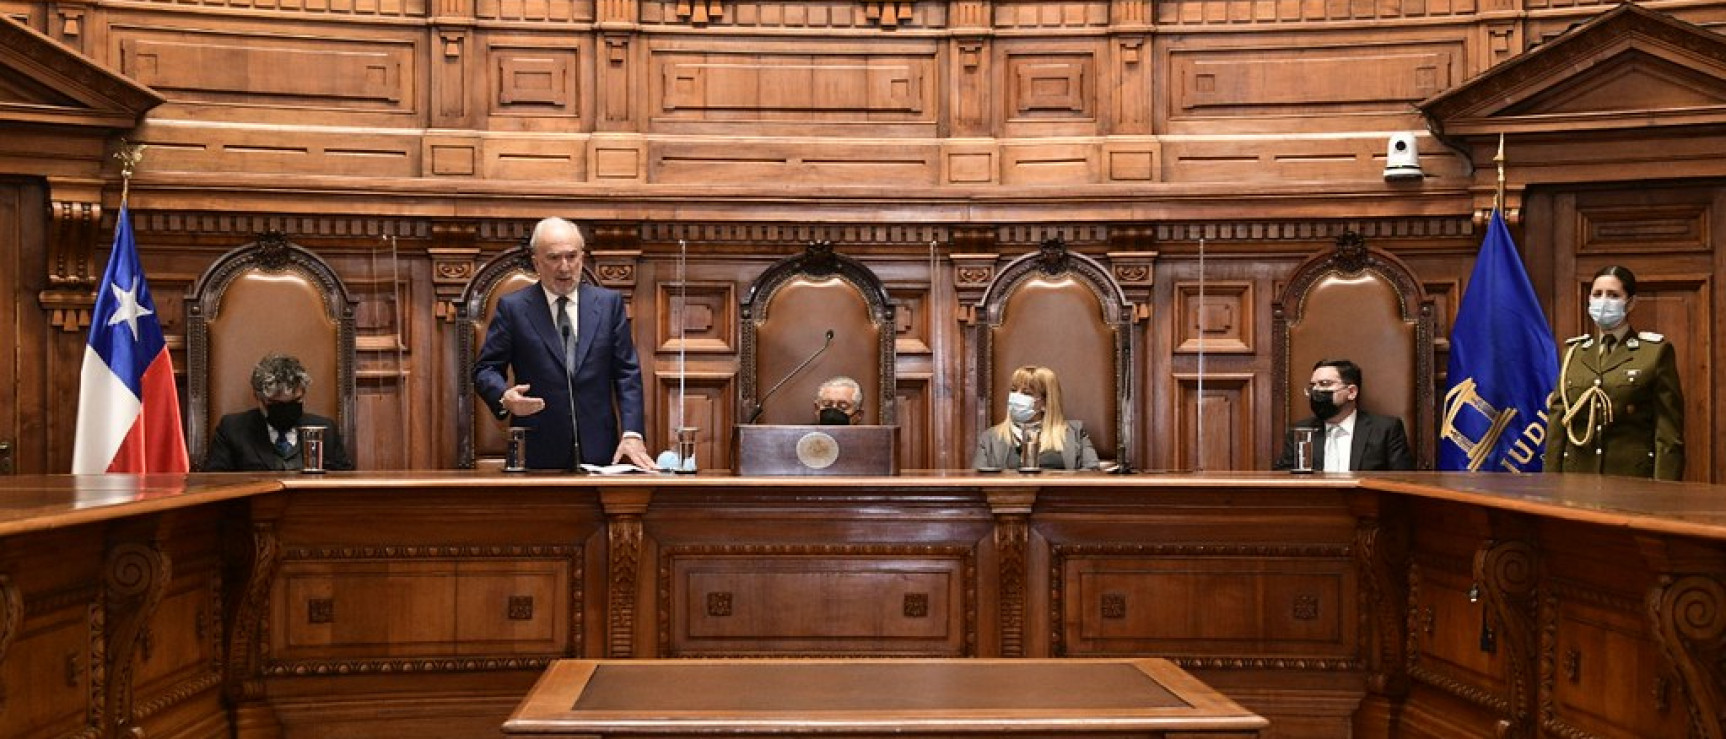 Santiago Muñoz Machado interviene en la Corte Suprema de Chile (foto: Poder Judicial Chile)